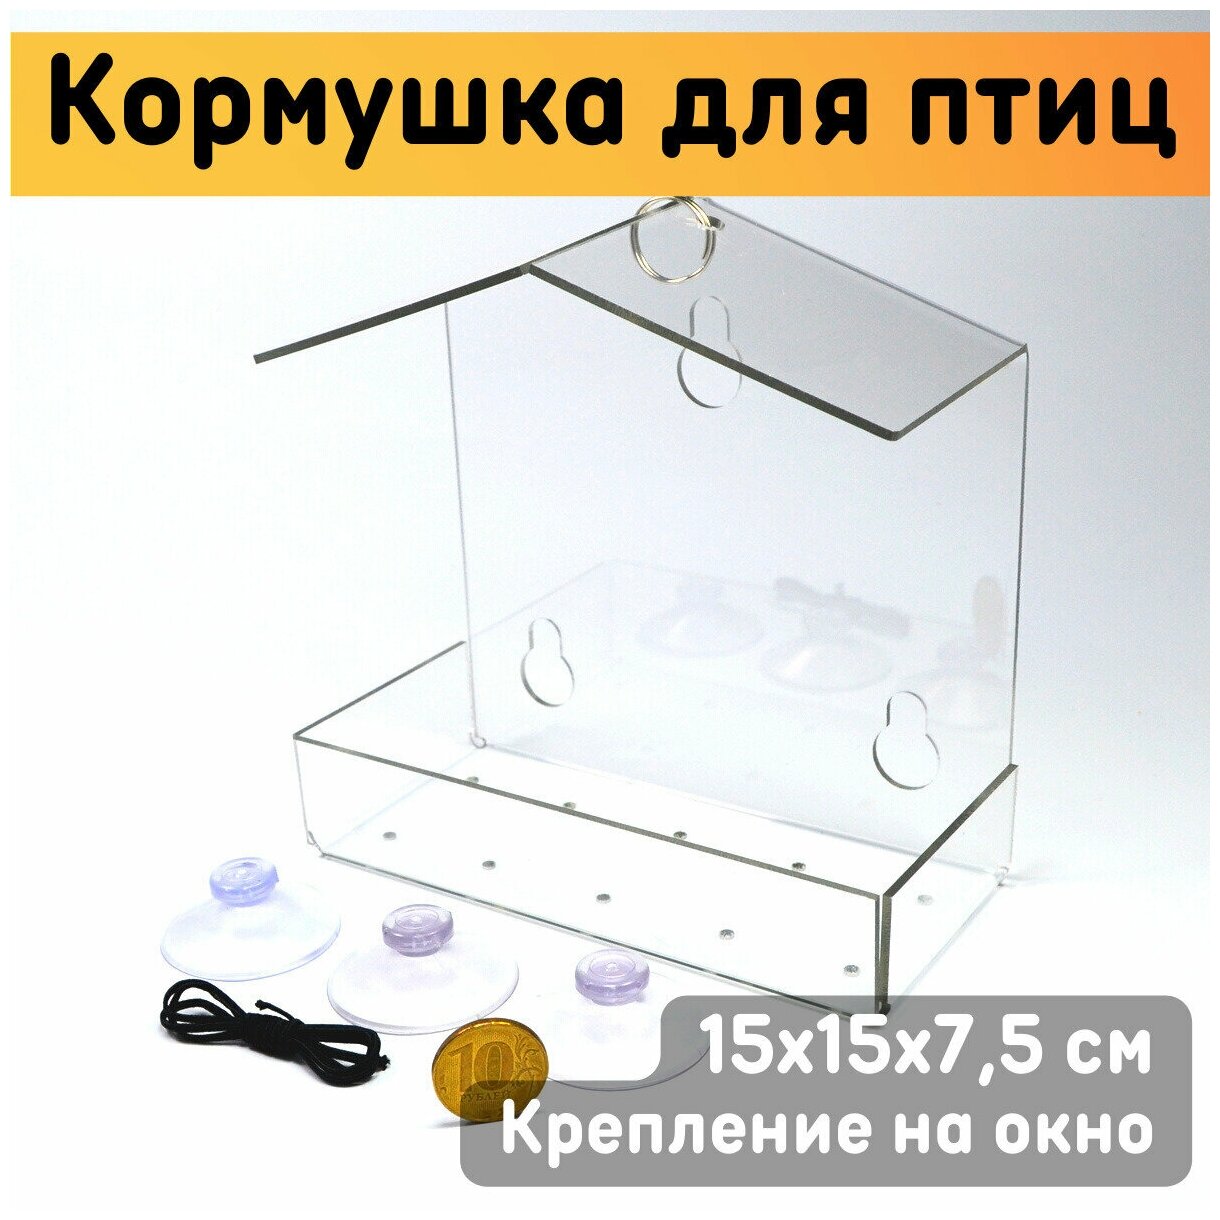 Кормушка для птиц 15х15х75 см / Кормушка на окно прозрачная на присосках / Скворечник для птиц